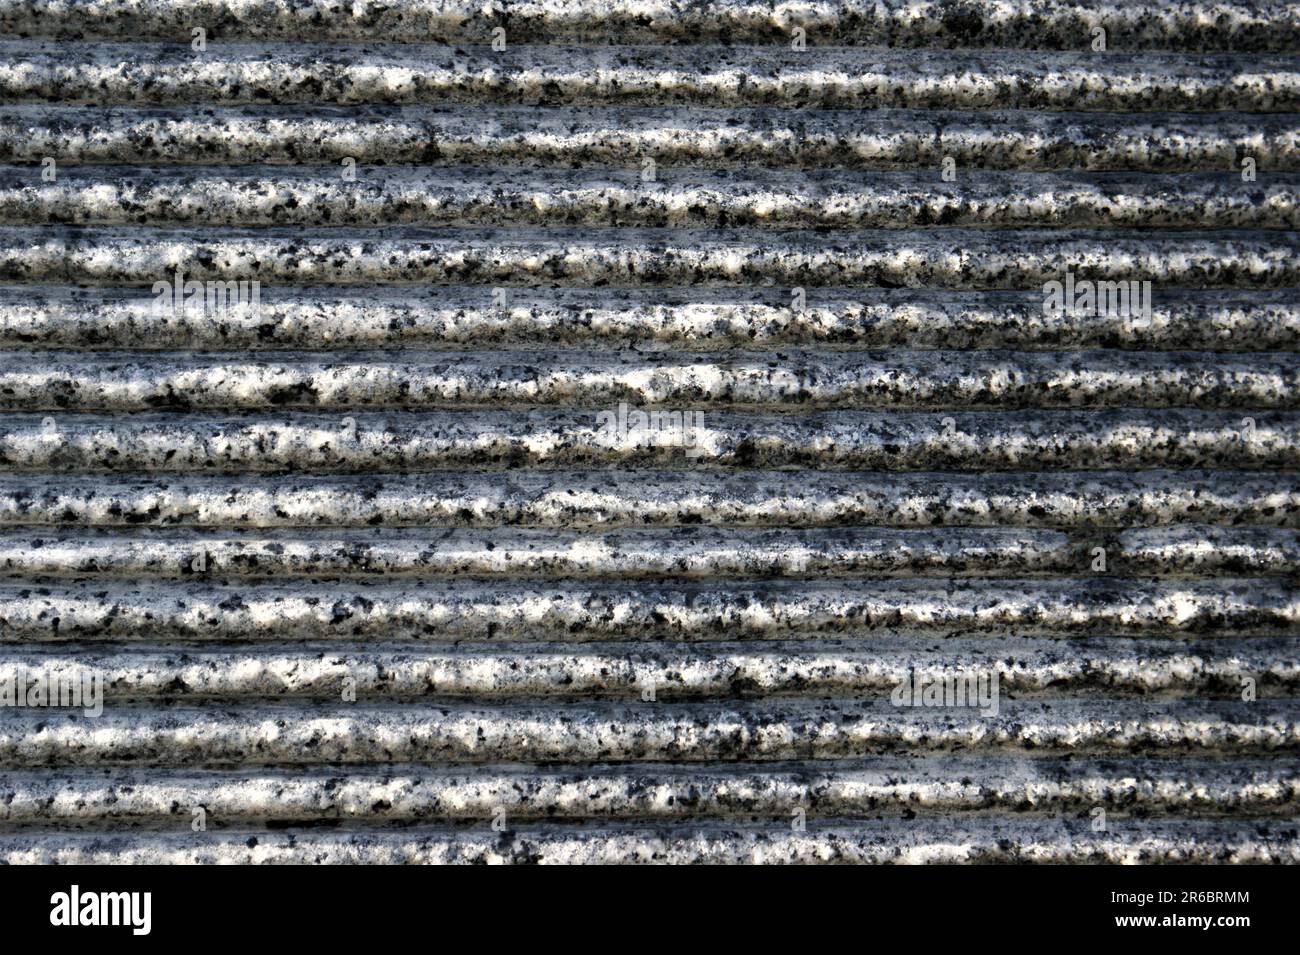 Horizontale Streifen aus Granit. Dunkelgrau gestreifte Hintergrundstruktur. Stockfoto